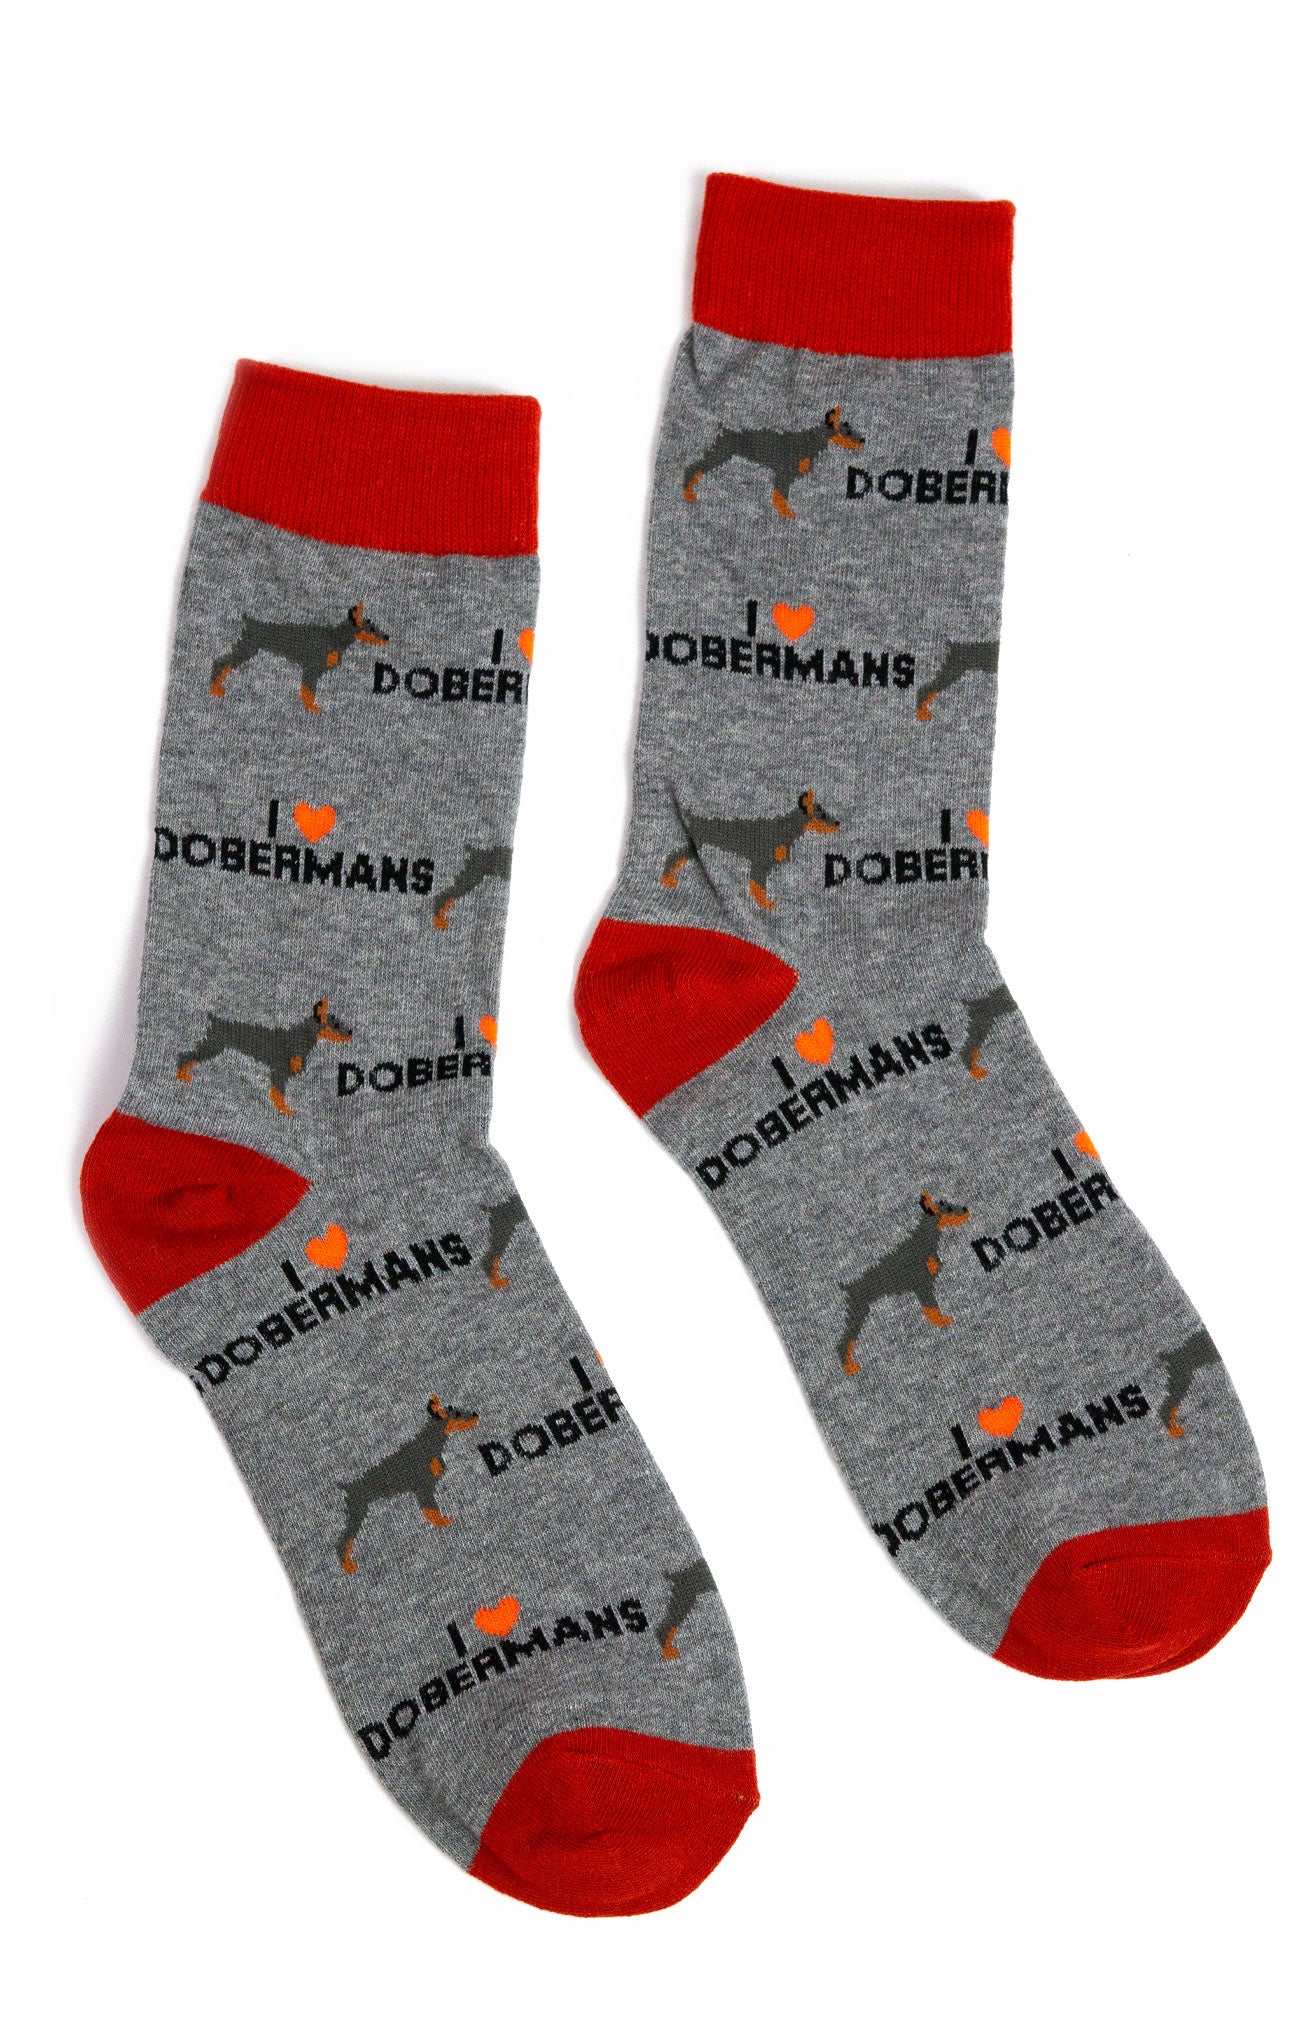 Doberman Socks